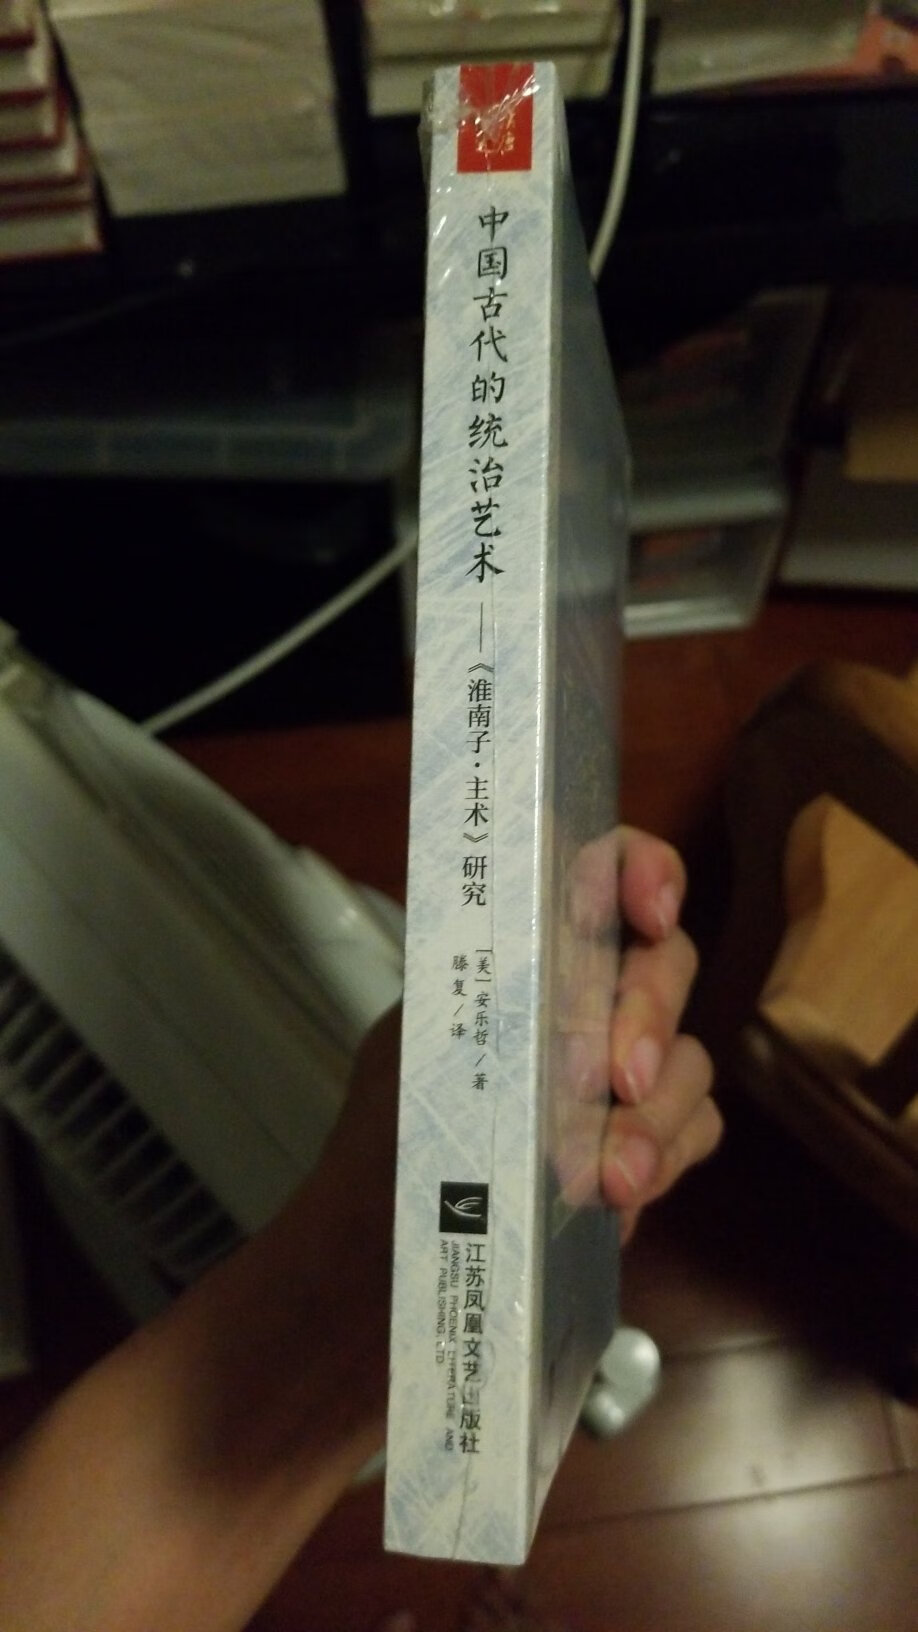 凤凰也学坏了，以前的海外中国研究丛书多便宜。现在居然也很甲骨文学，对读书人来说，平装就够了。定价最多24，而不是现在的48。